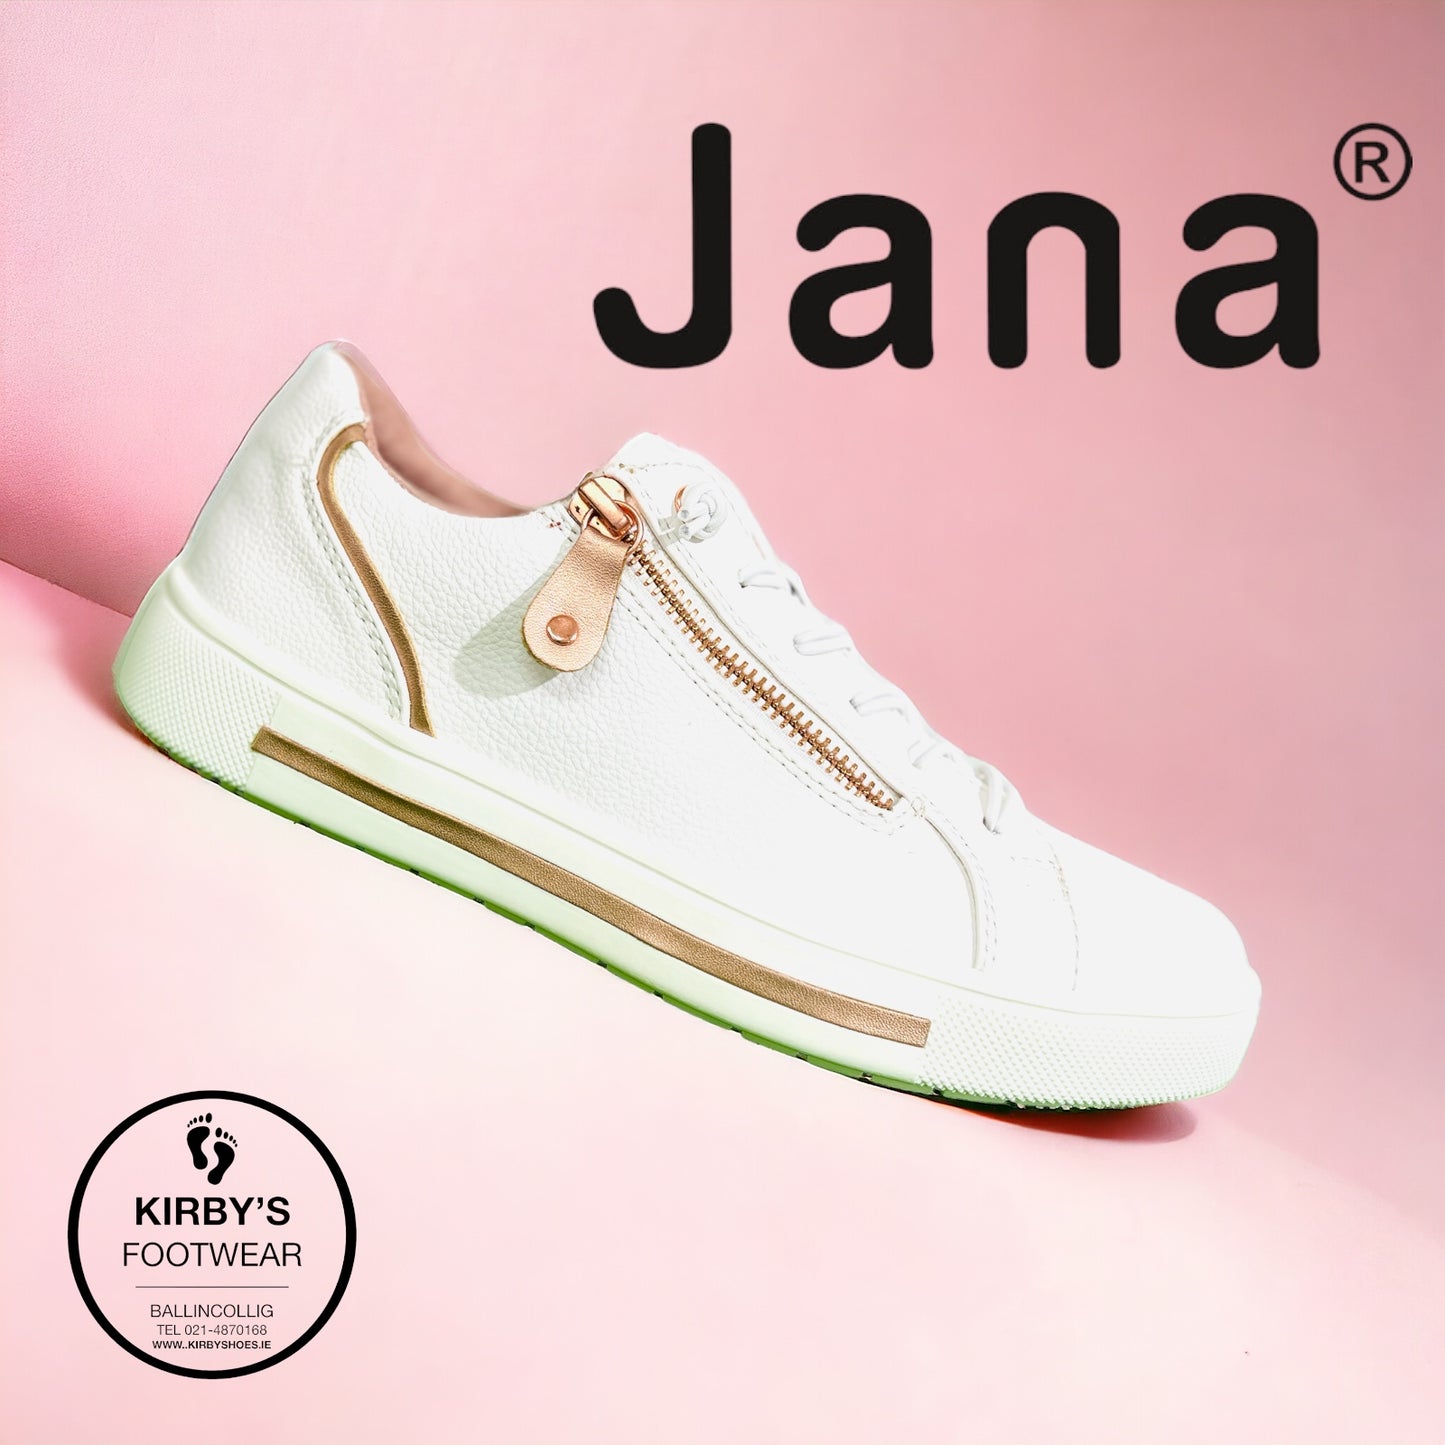 Jana trainer 23660 white gold